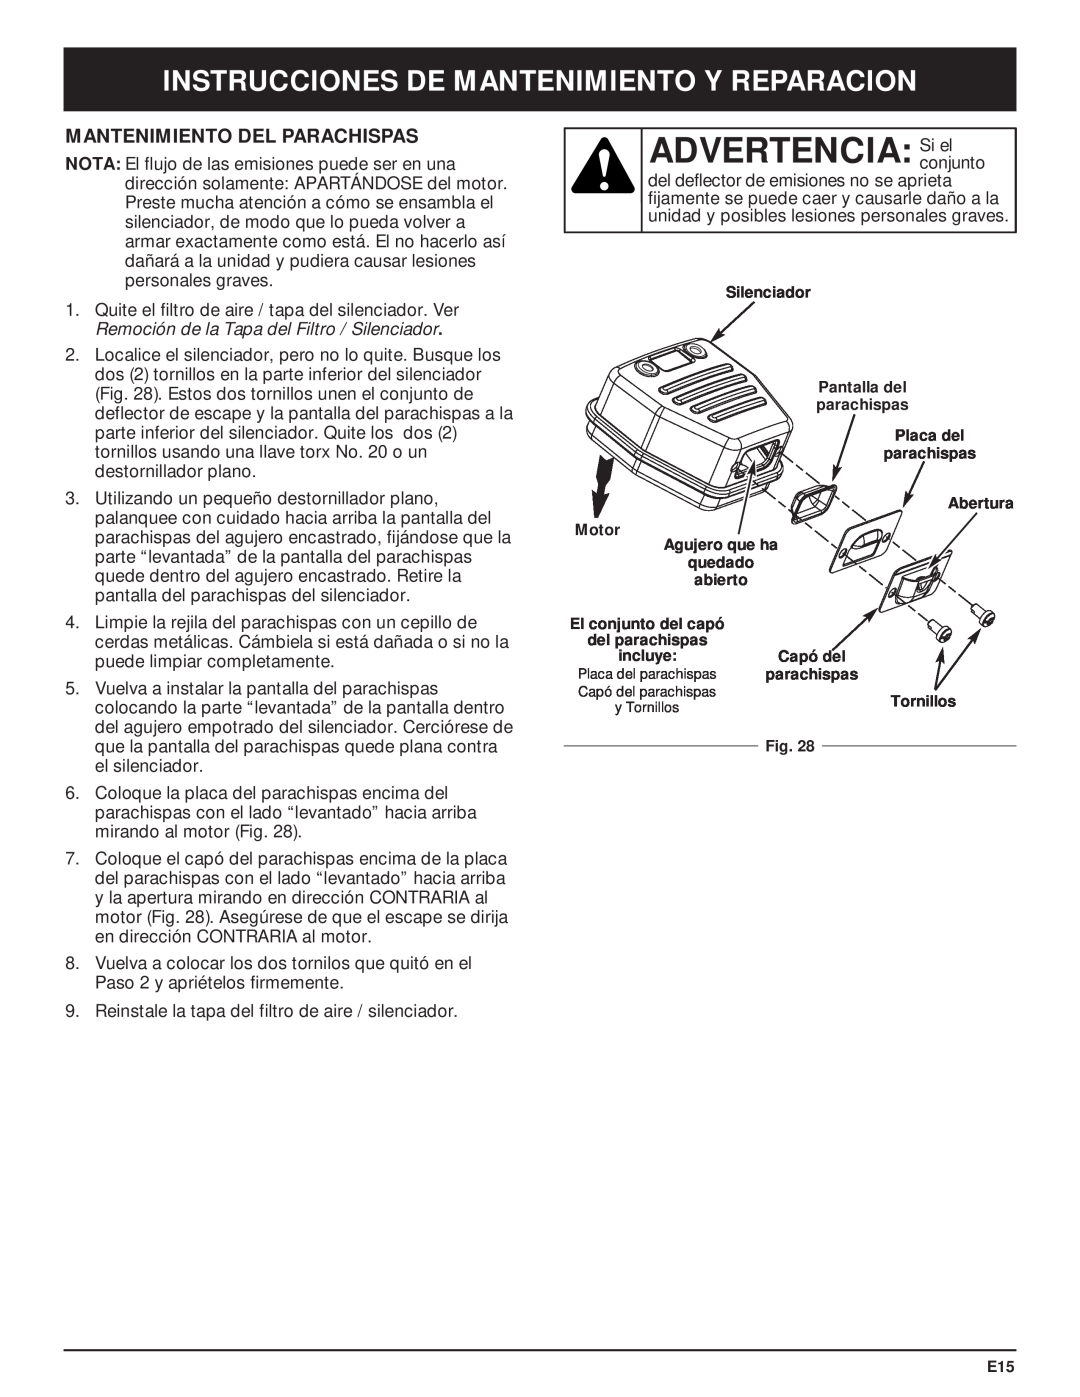 McCulloch MT705 manual ADVERTENCIA Siconjuntoel, Mantenimiento Del Parachispas, Instrucciones De Mantenimiento Y Reparacion 